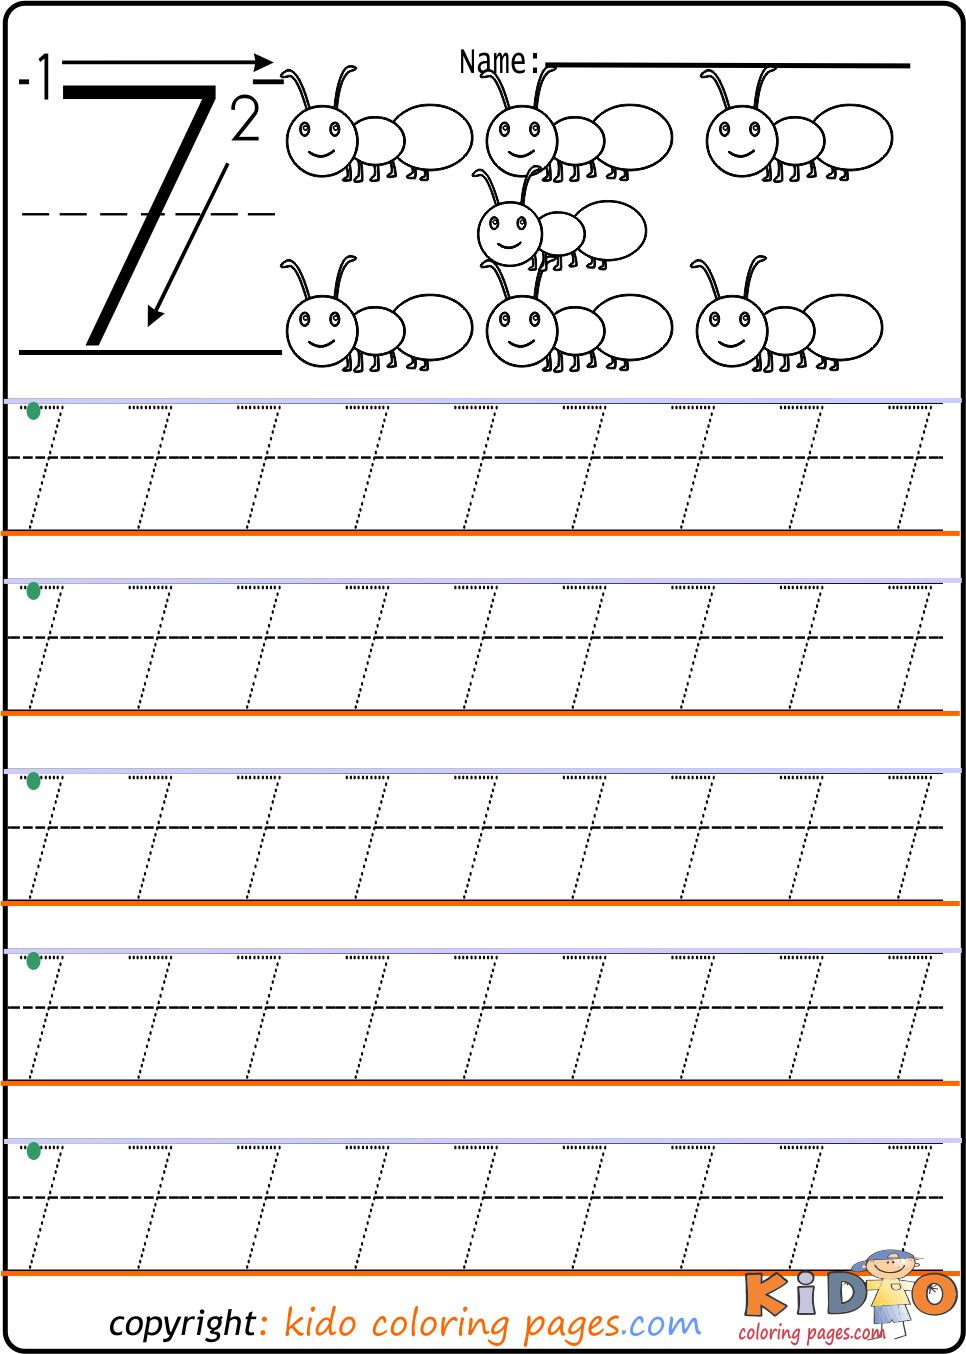 Number Tracing Worksheets for Kindergarten Number 7 Tracing Worksheets for Kindergarten Kids Coloring